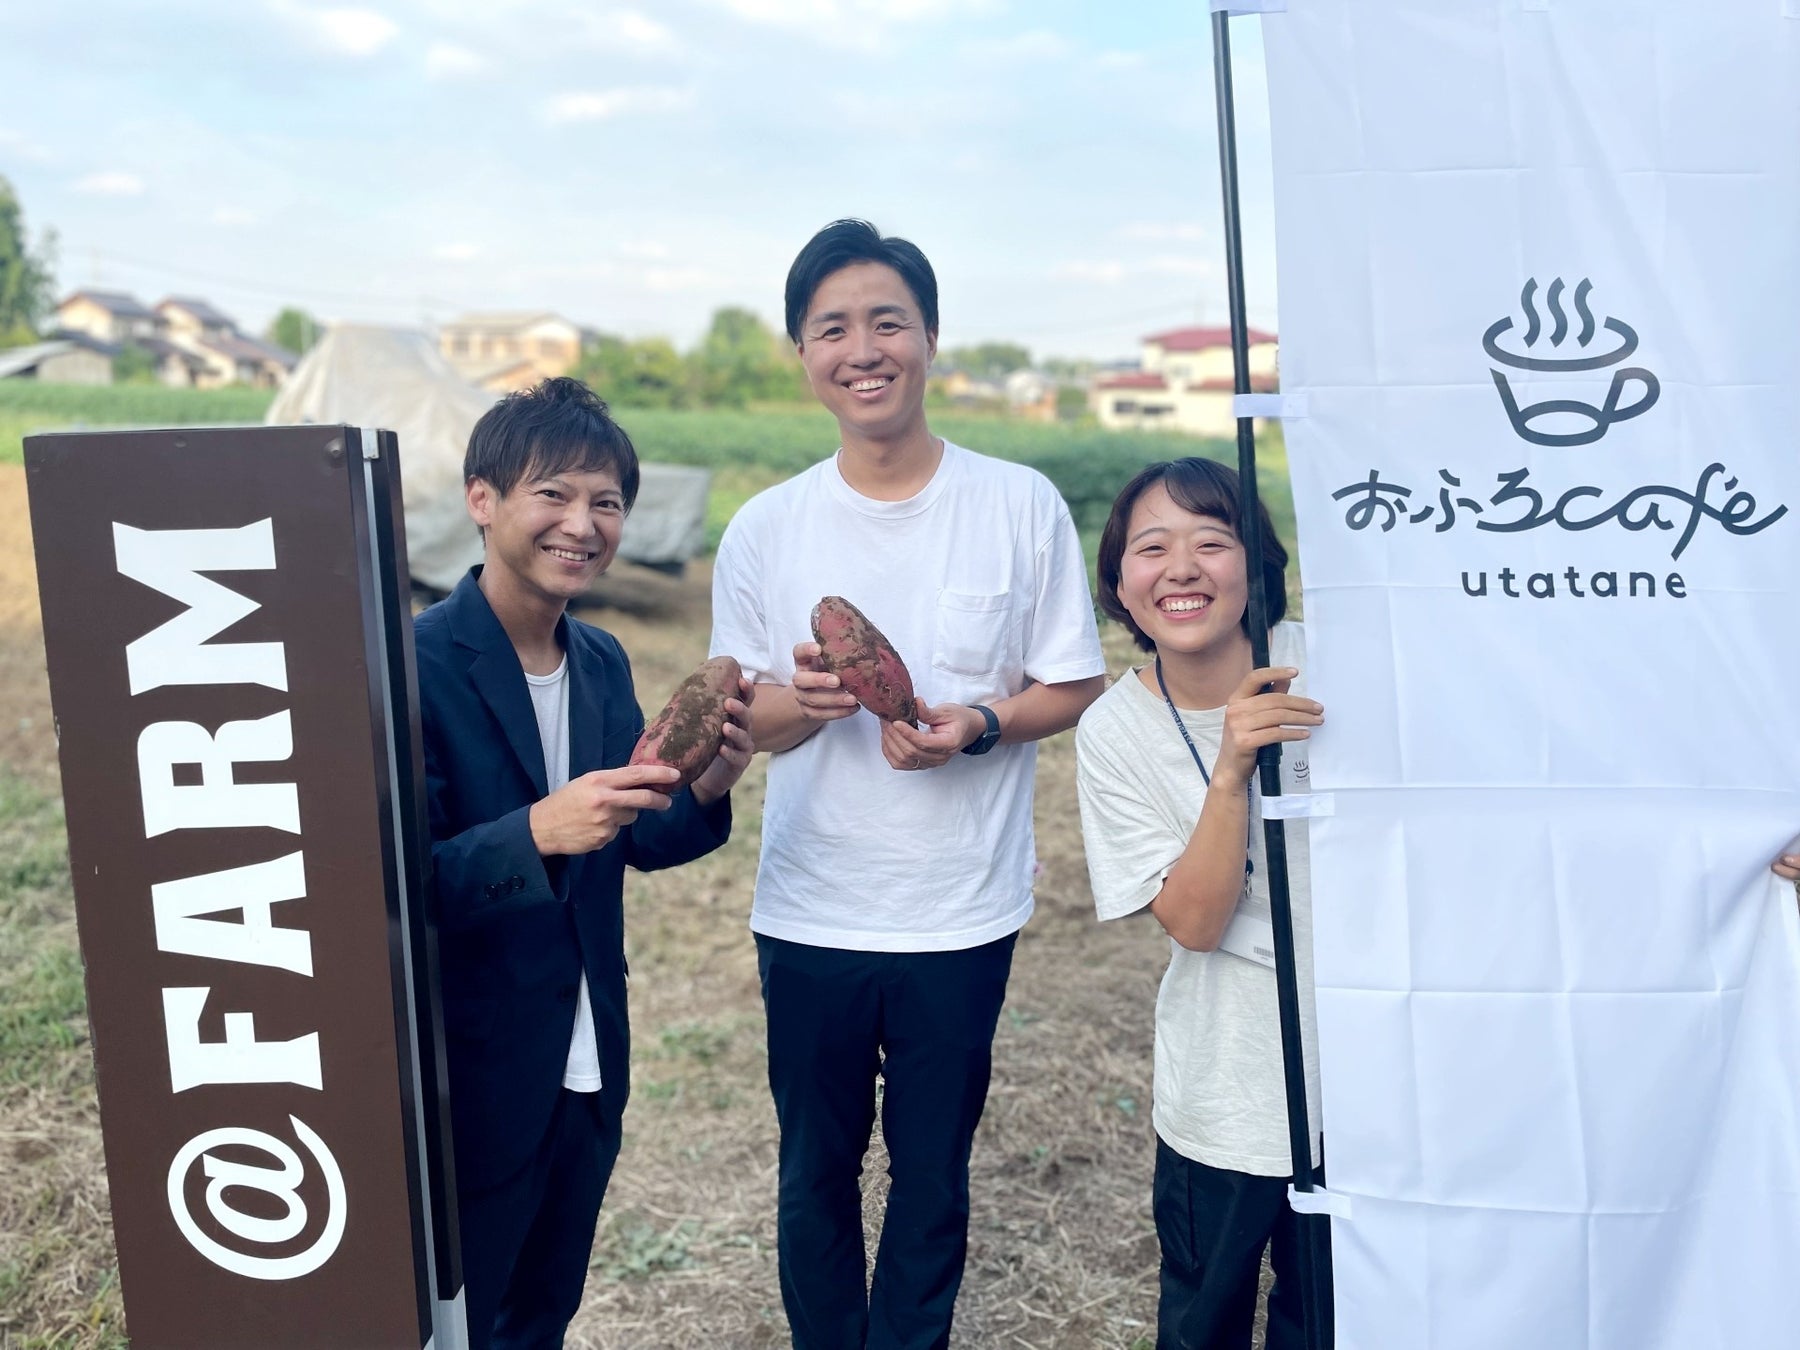 おふろcafe utataneが、川越の焼き芋店「COEDO HACHI」とのコラボイベントを開催。芋のおふろや焼き芋スイーツの提供ものサブ画像1